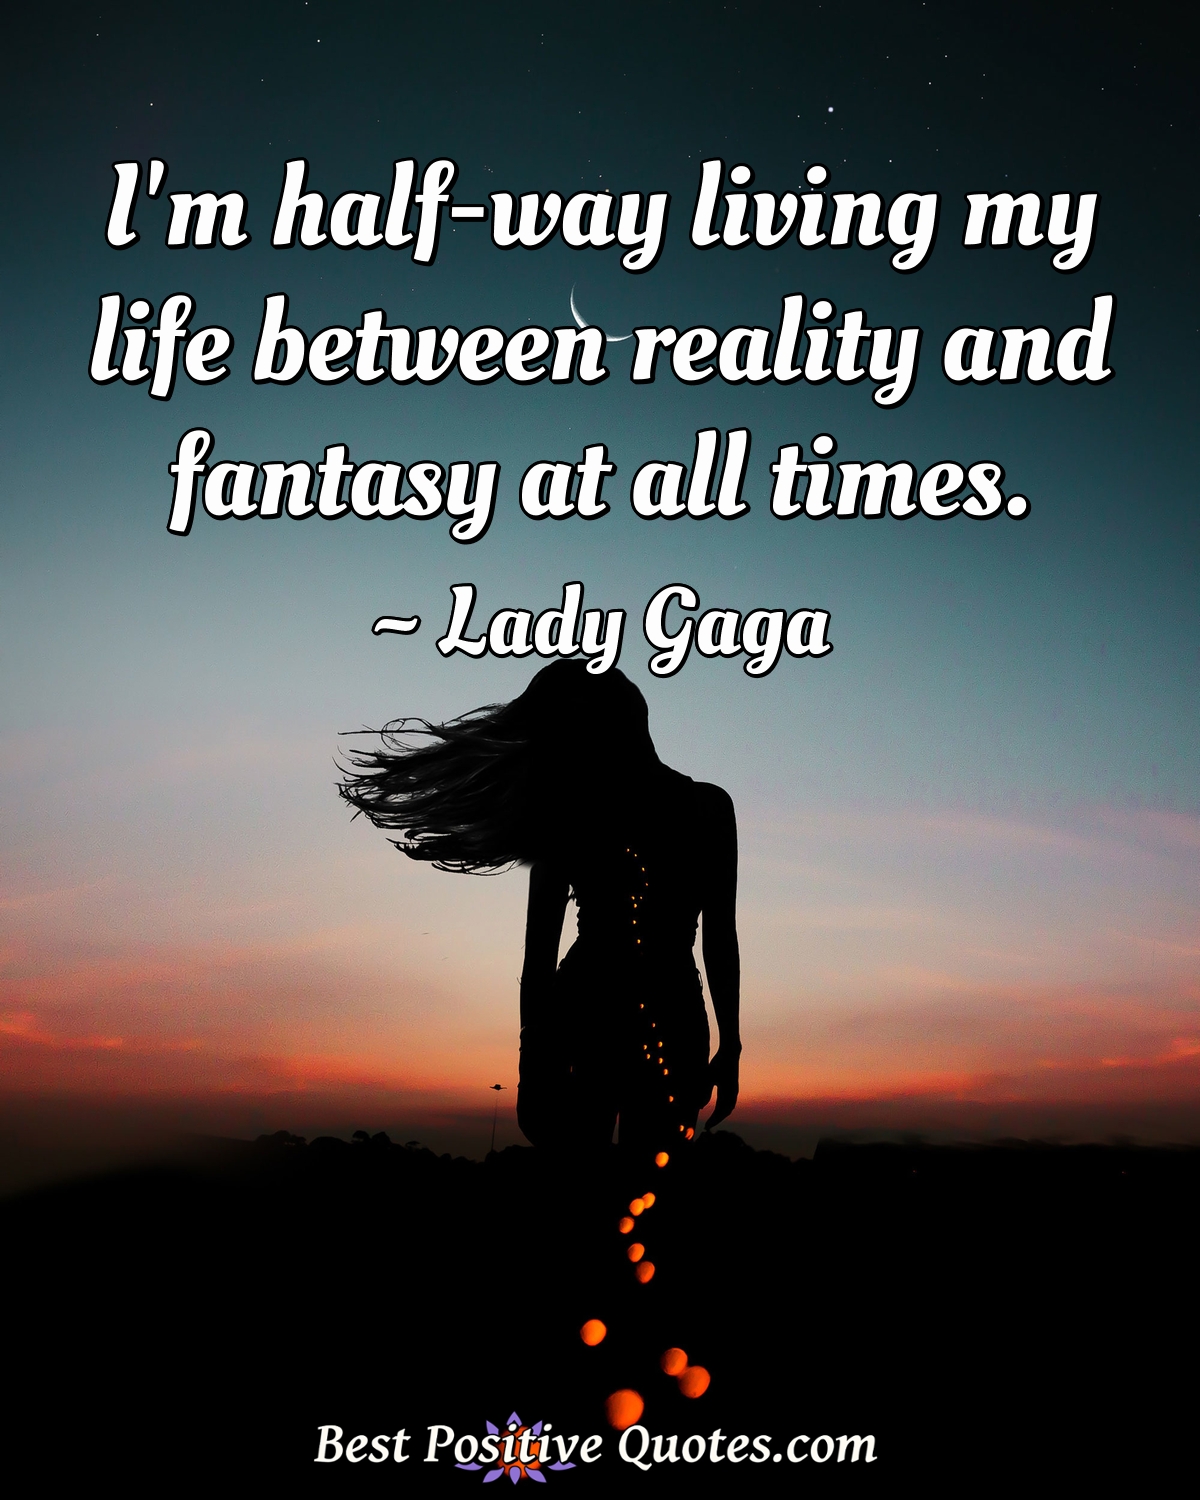 I'm half-way living my life between reality and fantasy at all times. - Lady Gaga